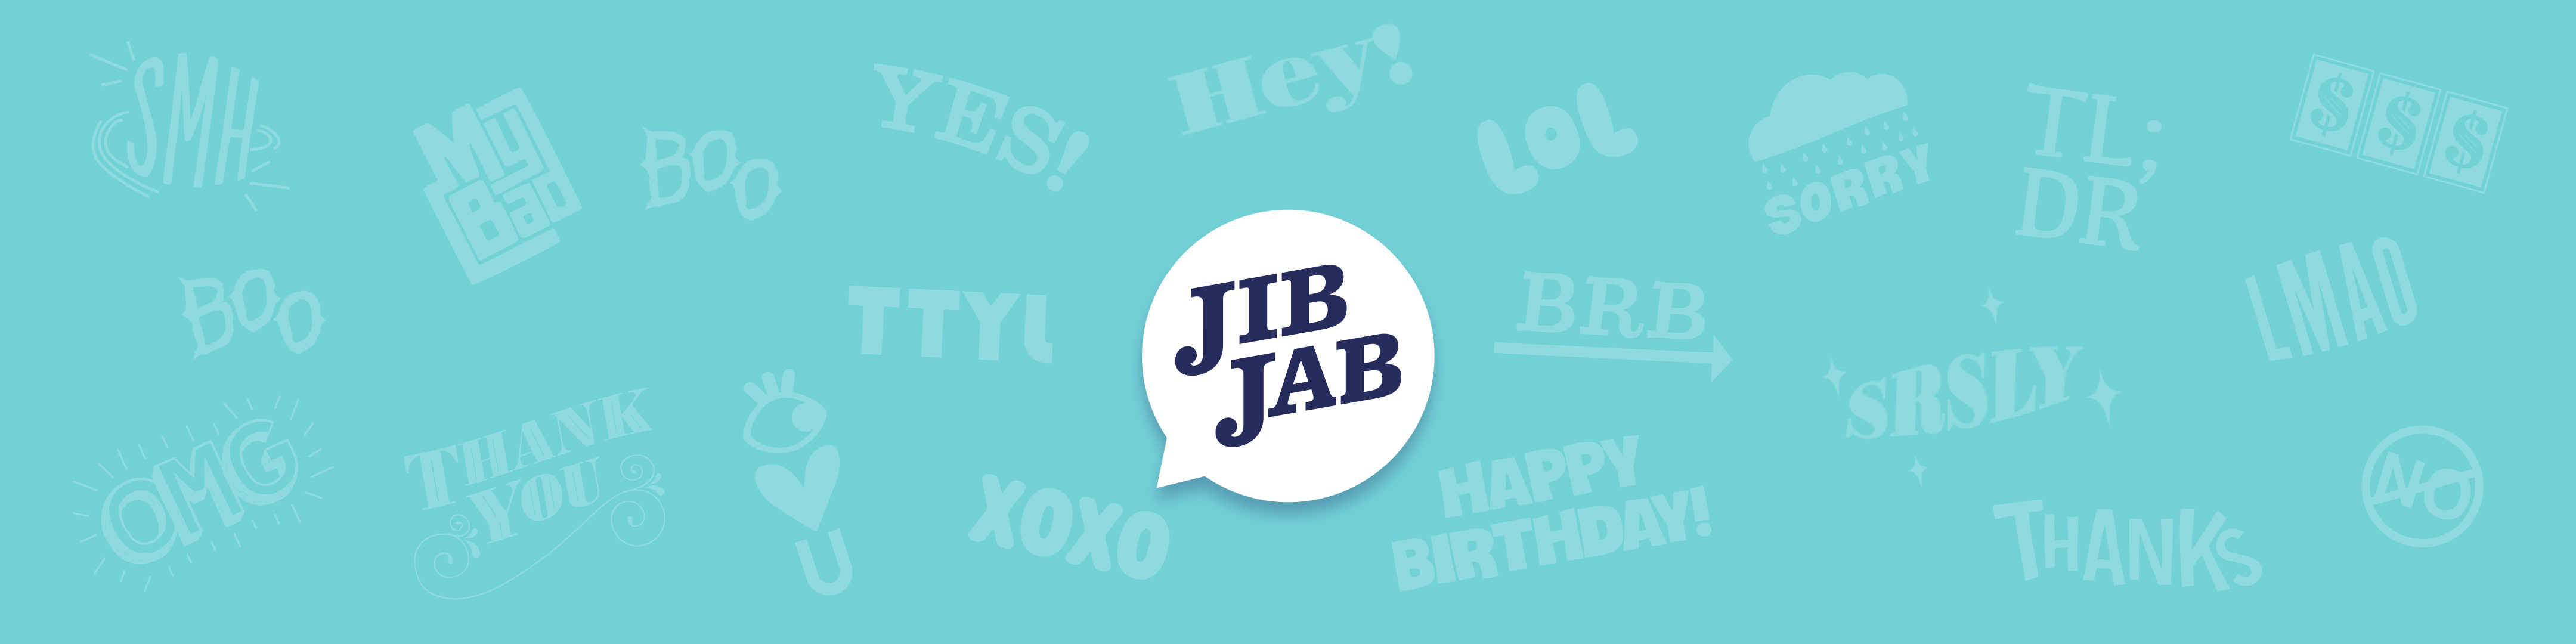 Jibjab free downloads